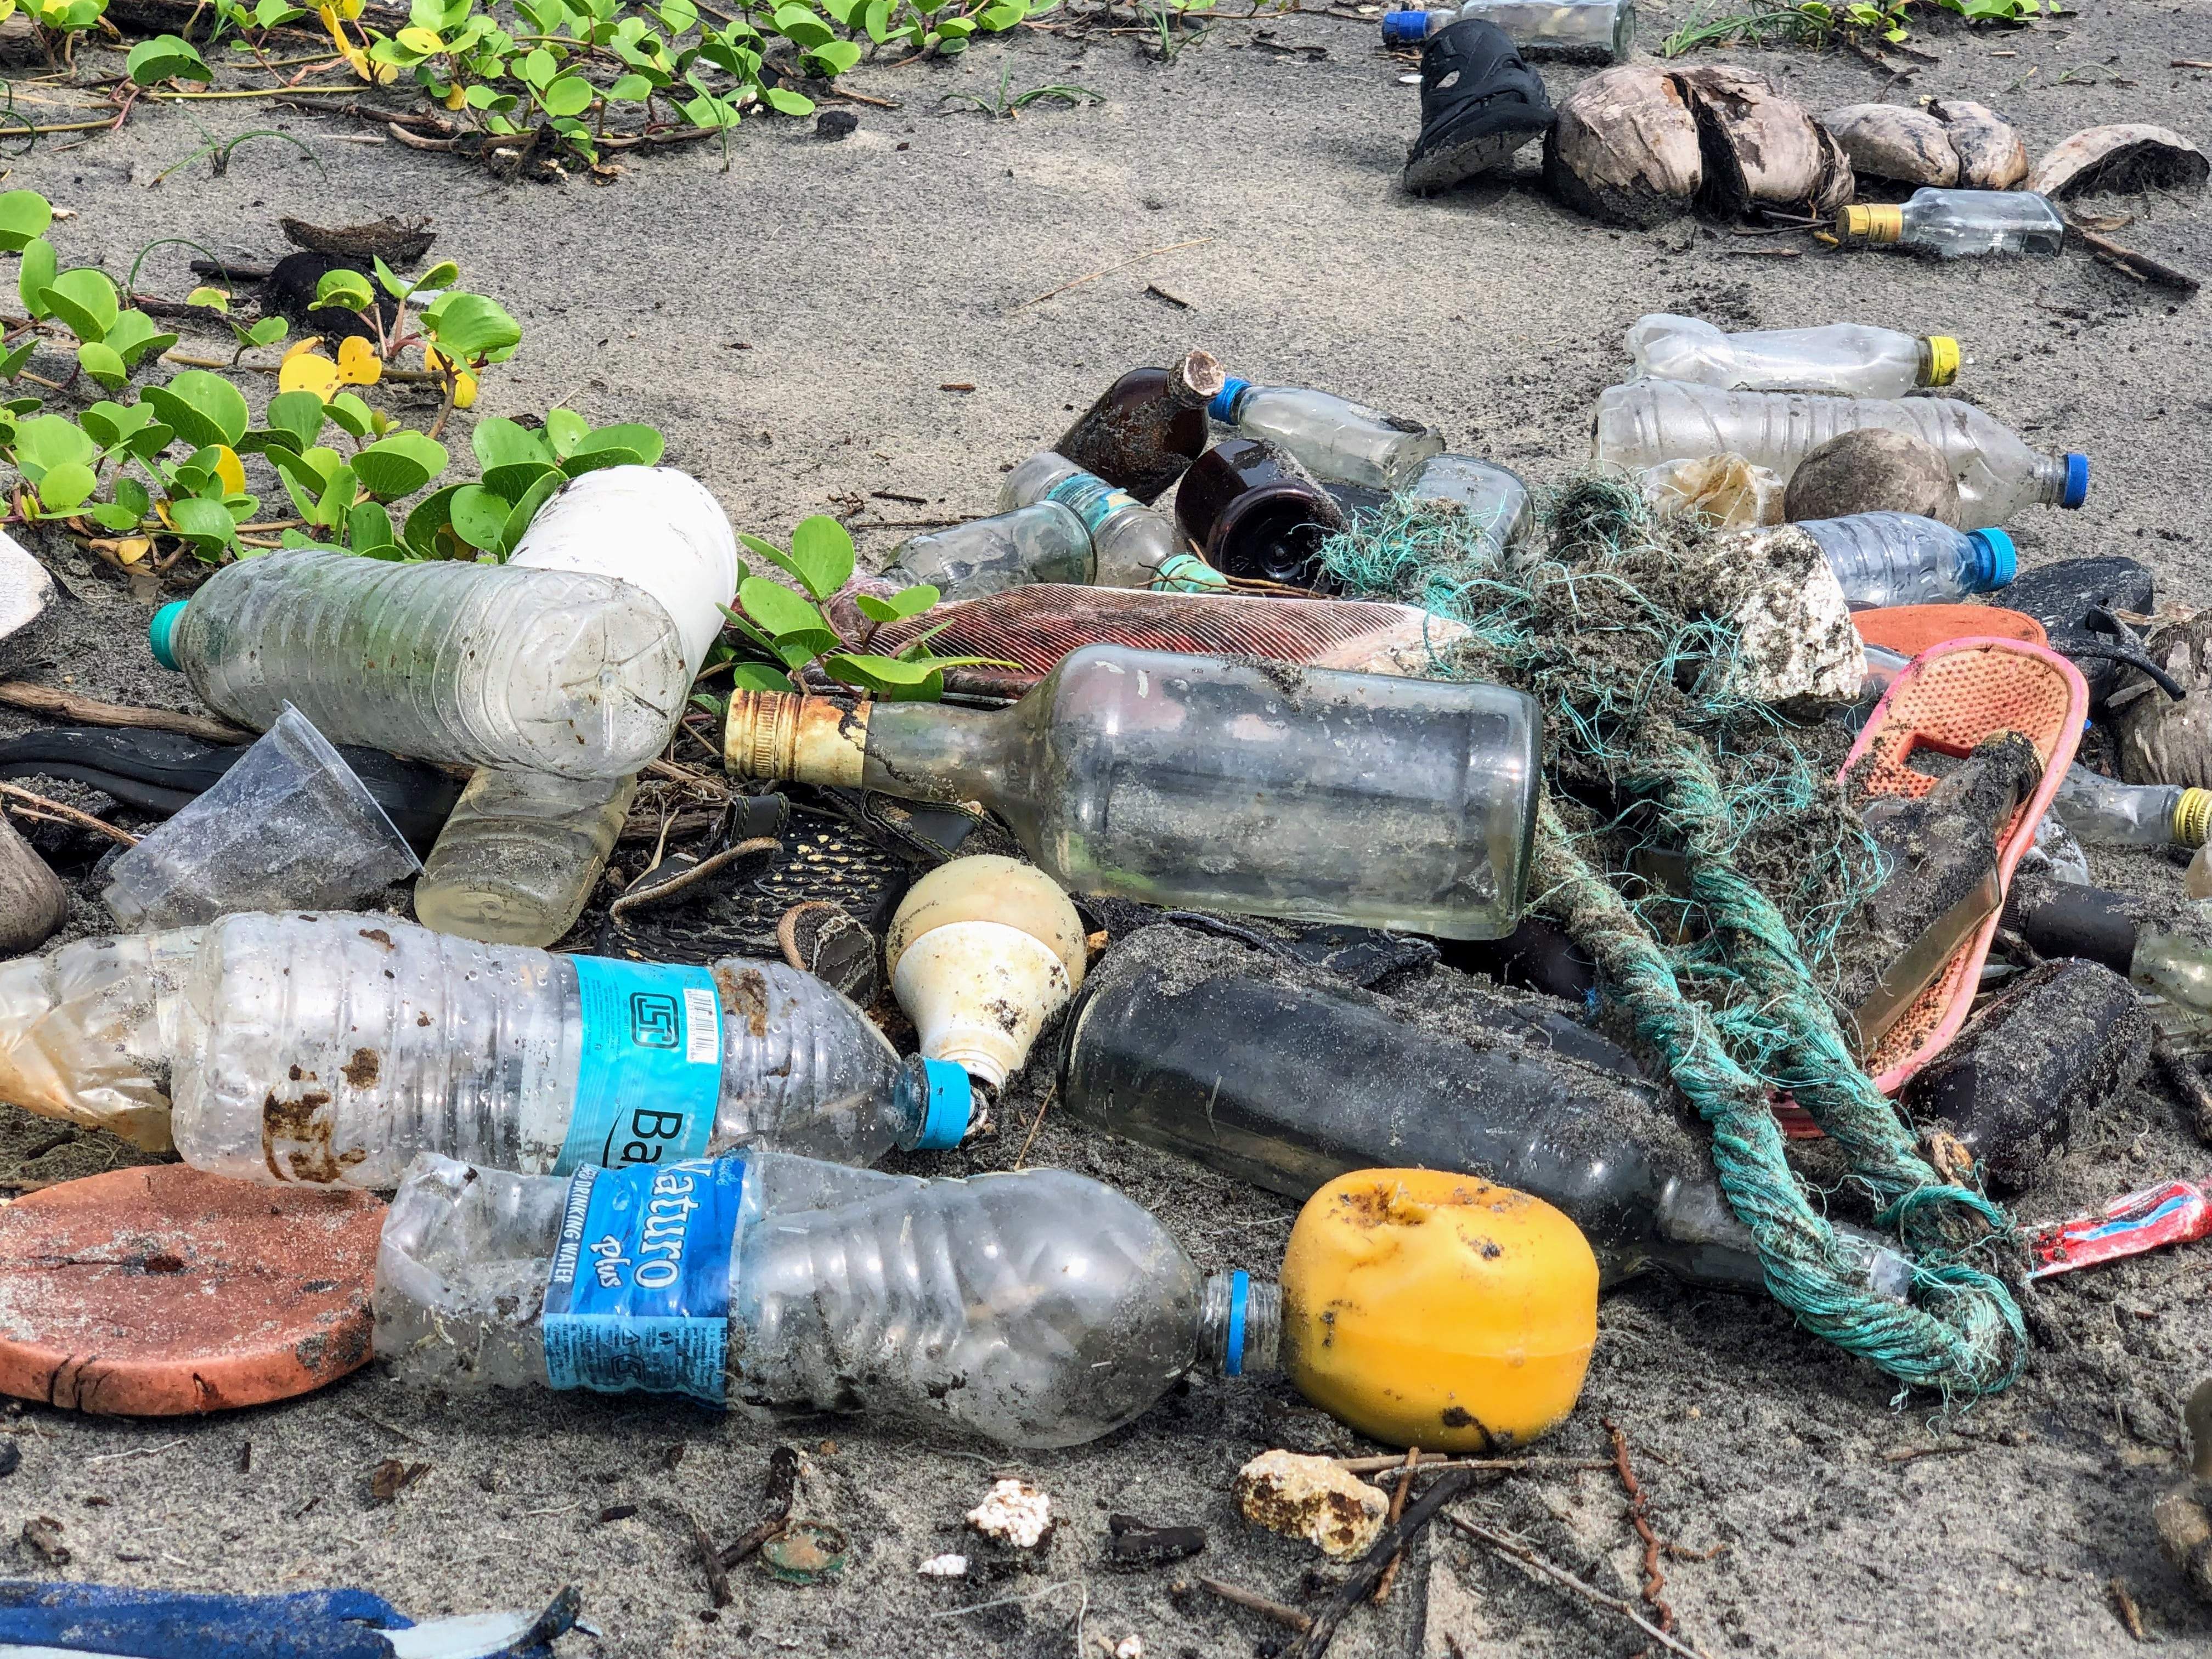 Nova plans to invest $2m to reduce plastic debris in oceans